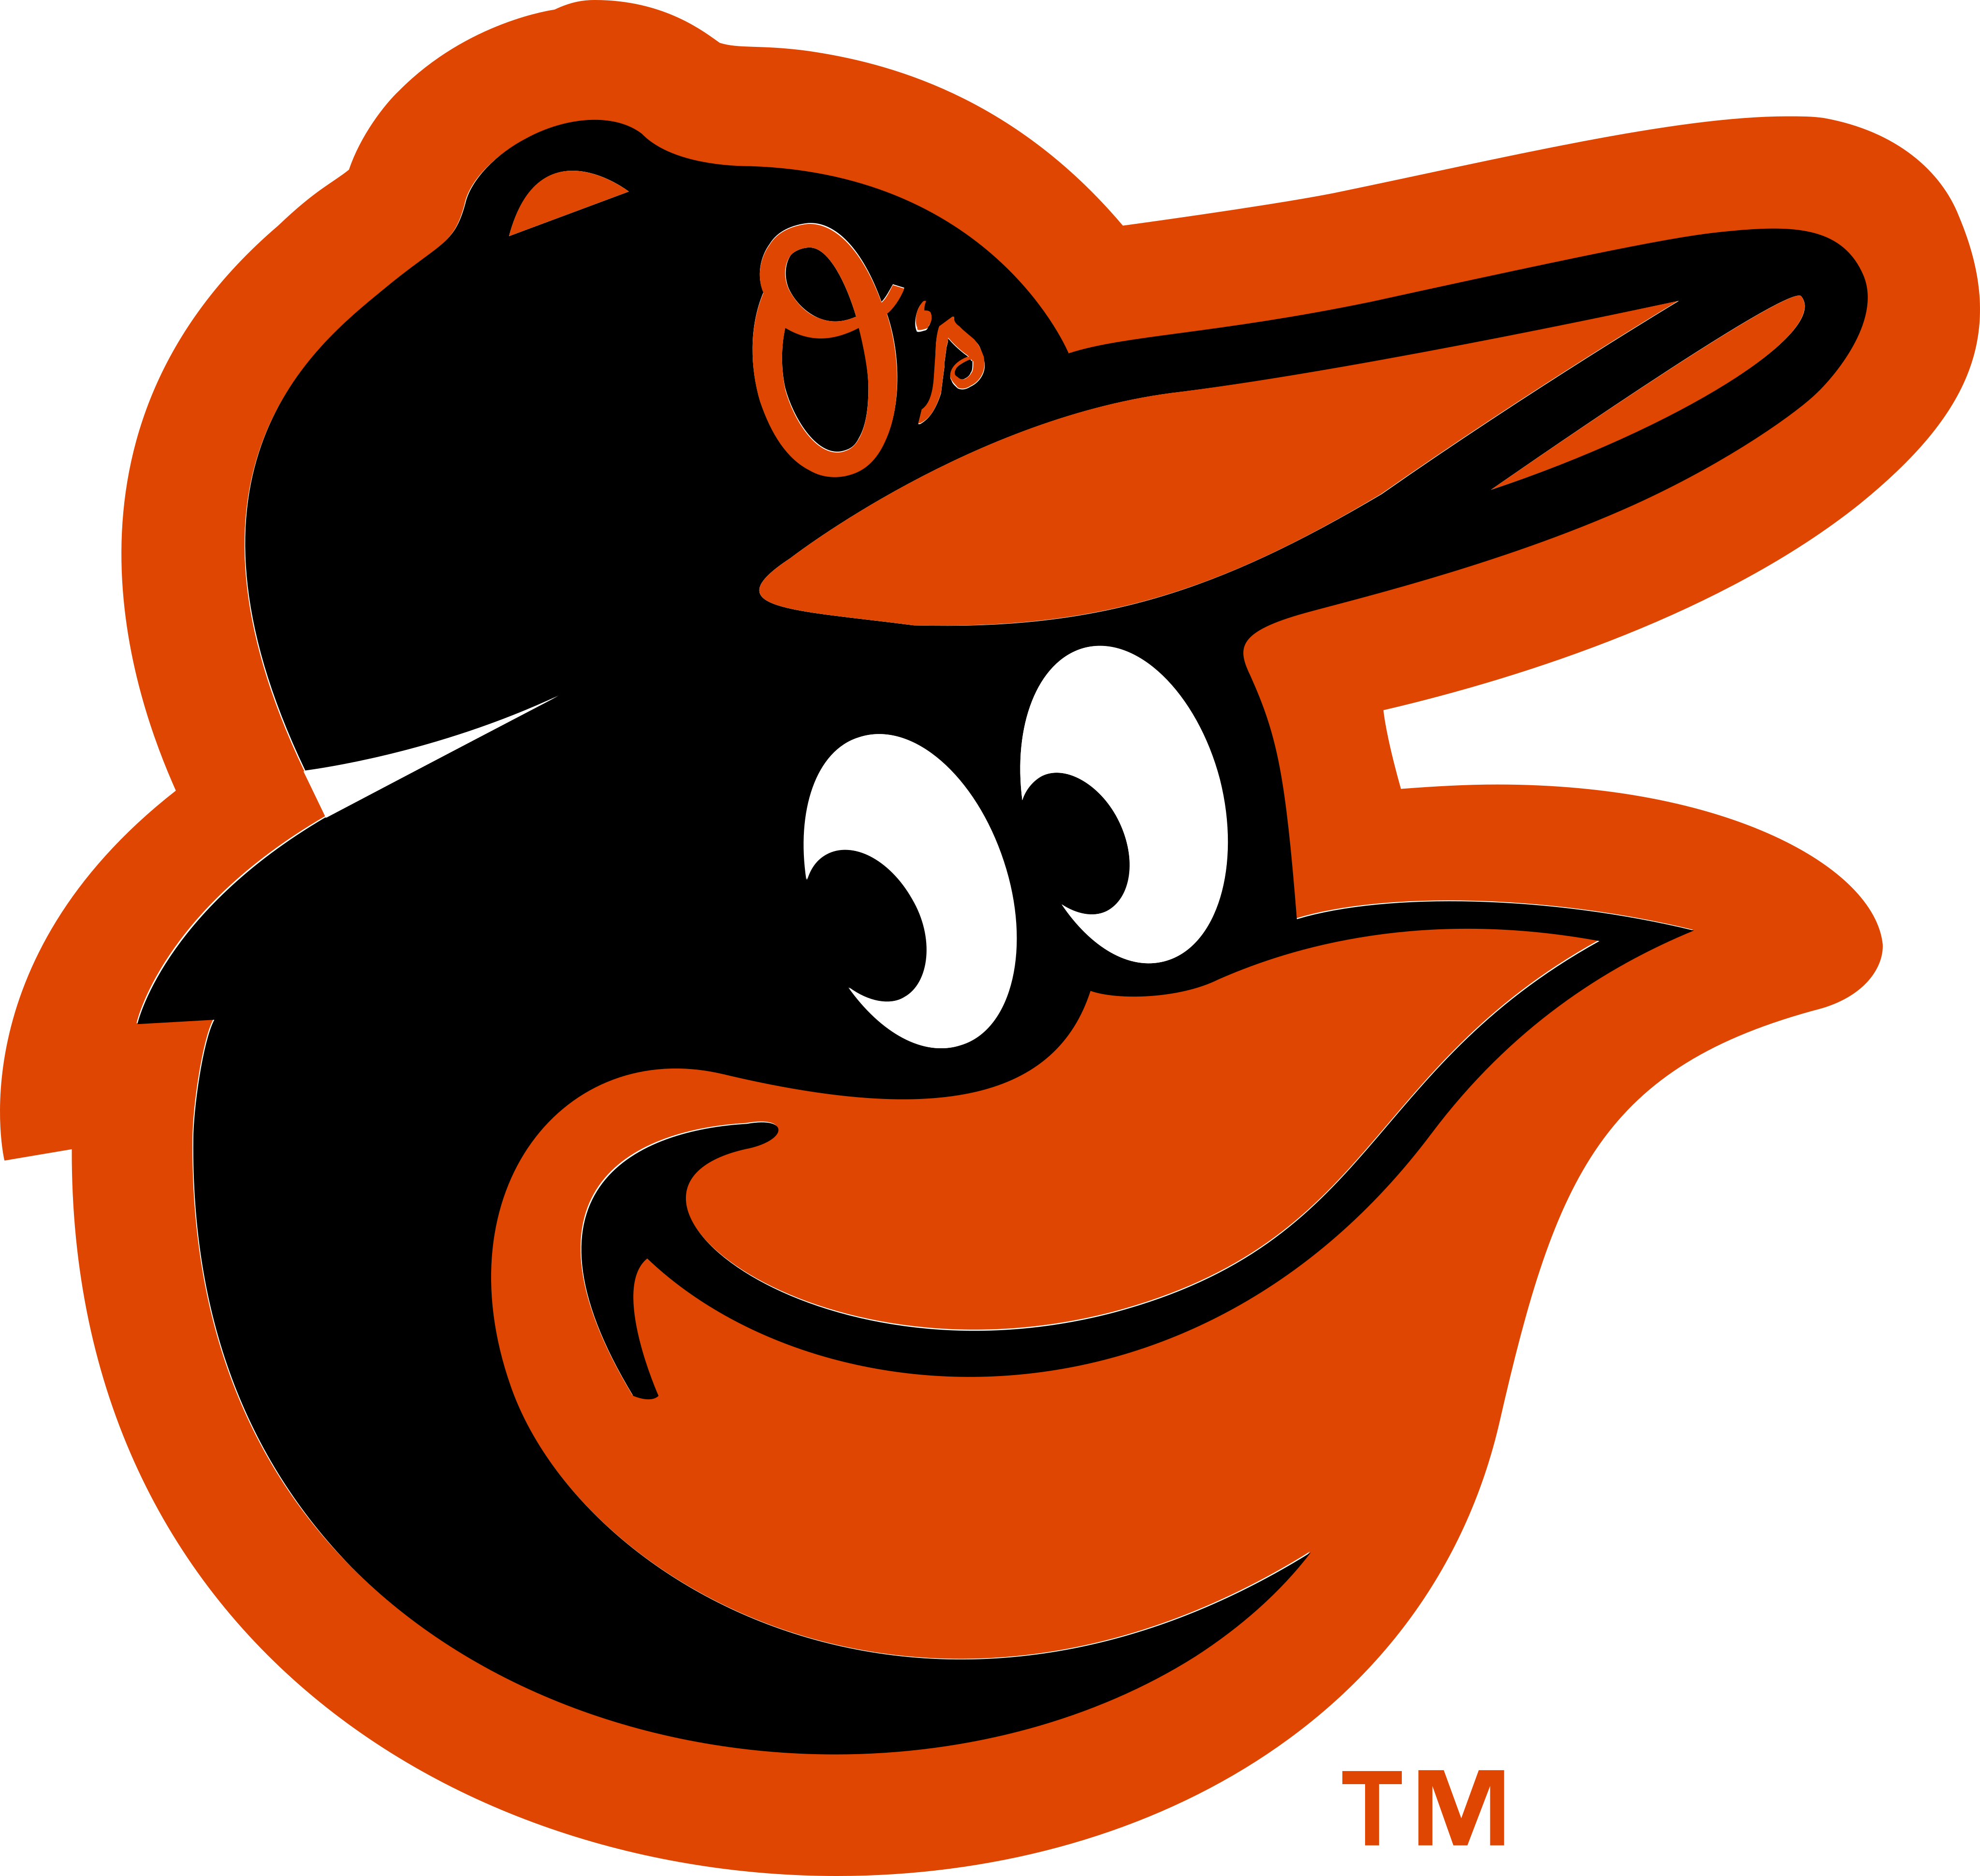 baltimore orioles logo - Baltimore Orioles Logo .SVG 2020 Vector